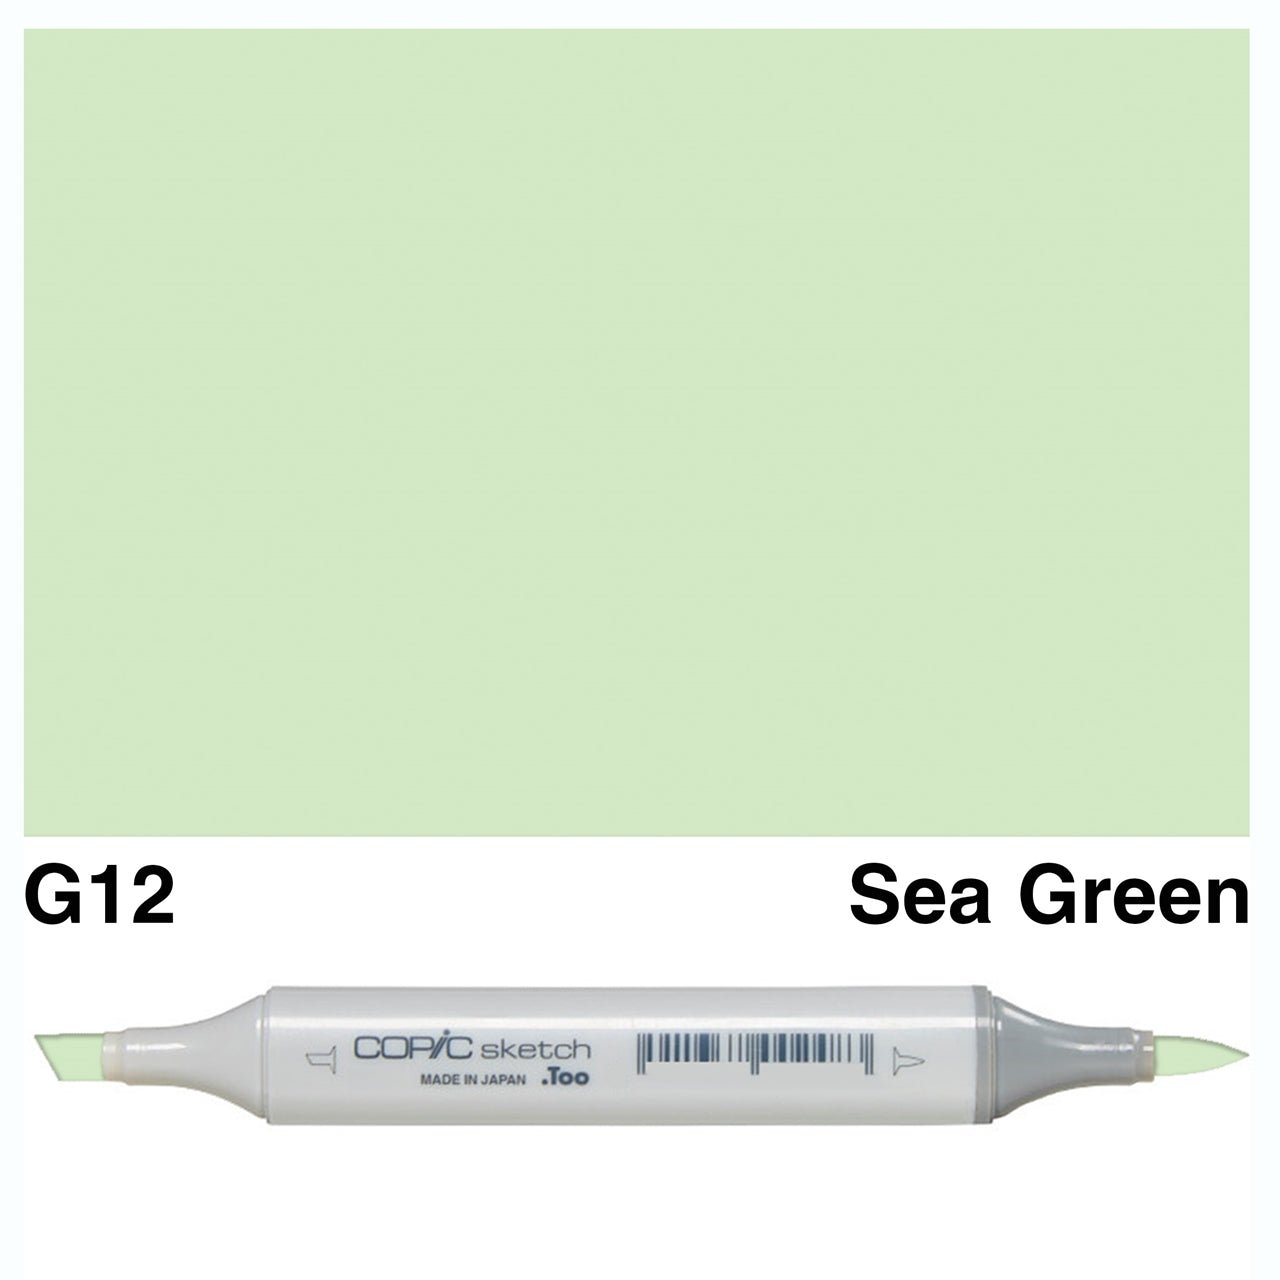 Copic Sketch G12 Sea Green - theartshop.com.au